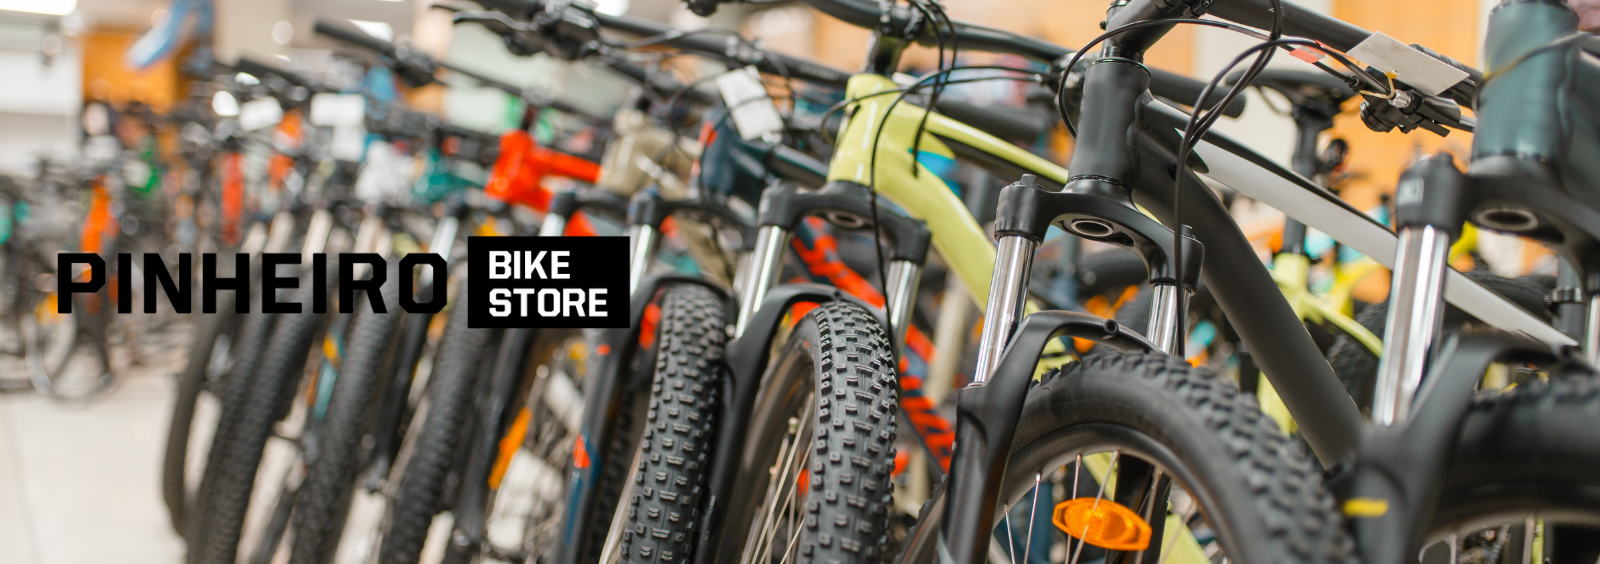 Pinheiro Bike Store - 